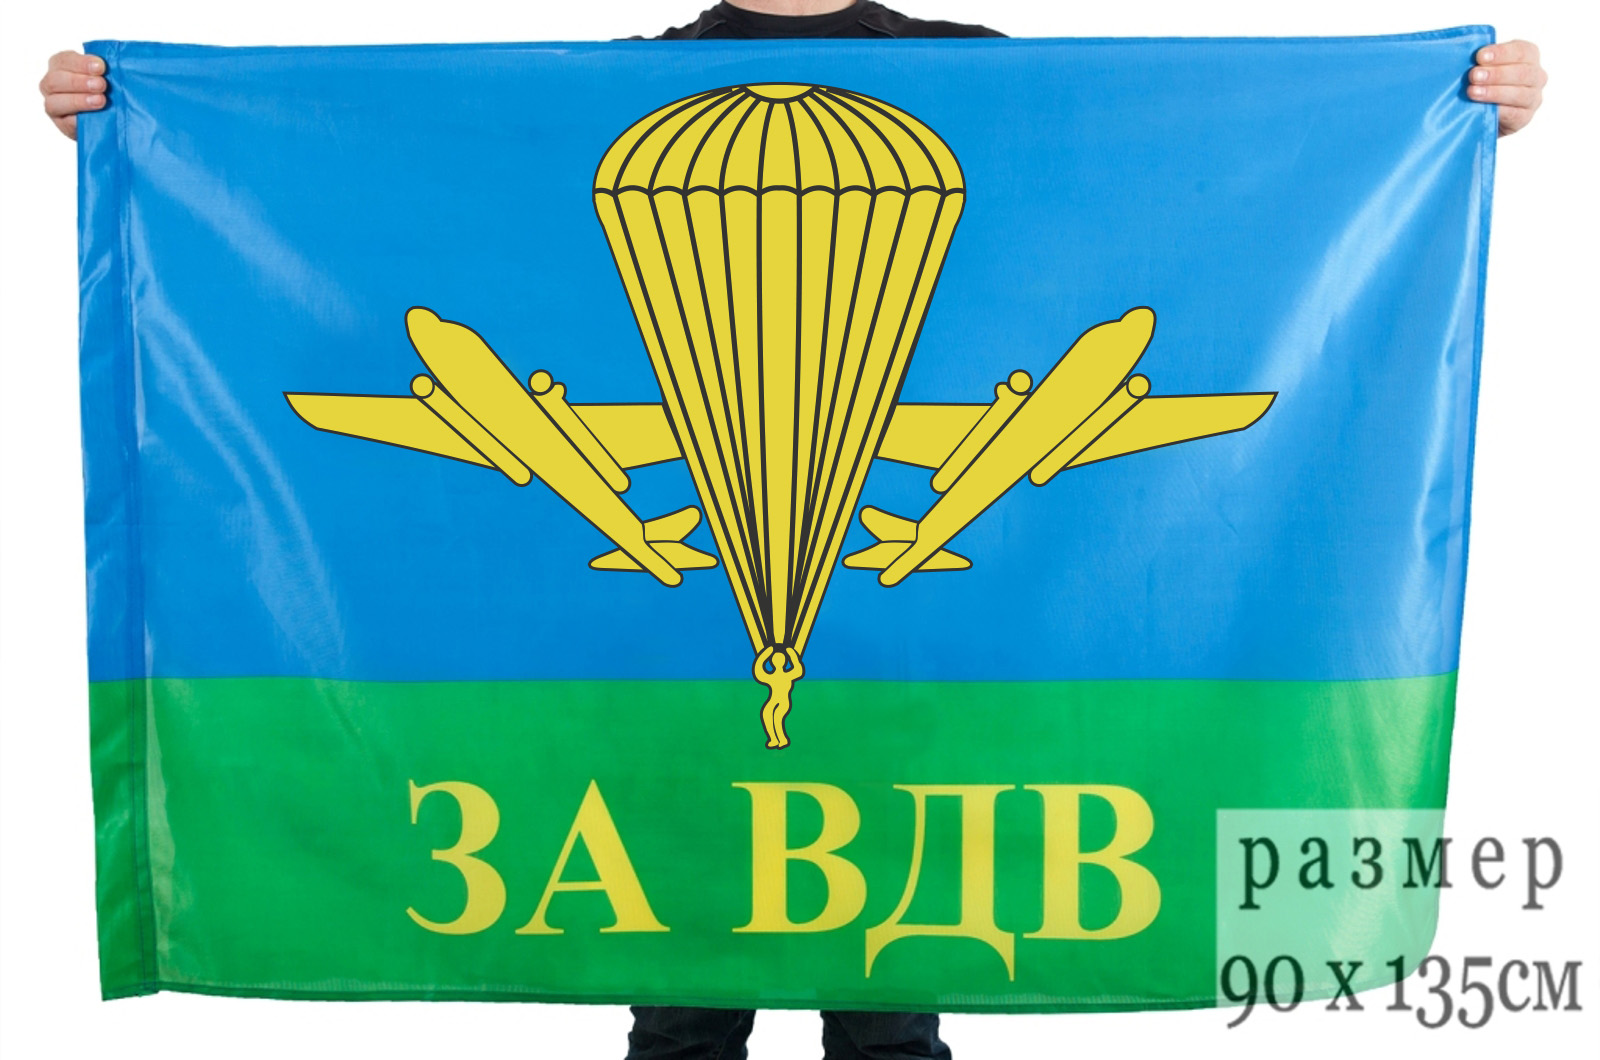 Купить флаг "За ВДВ РФ" недорого в Военпро